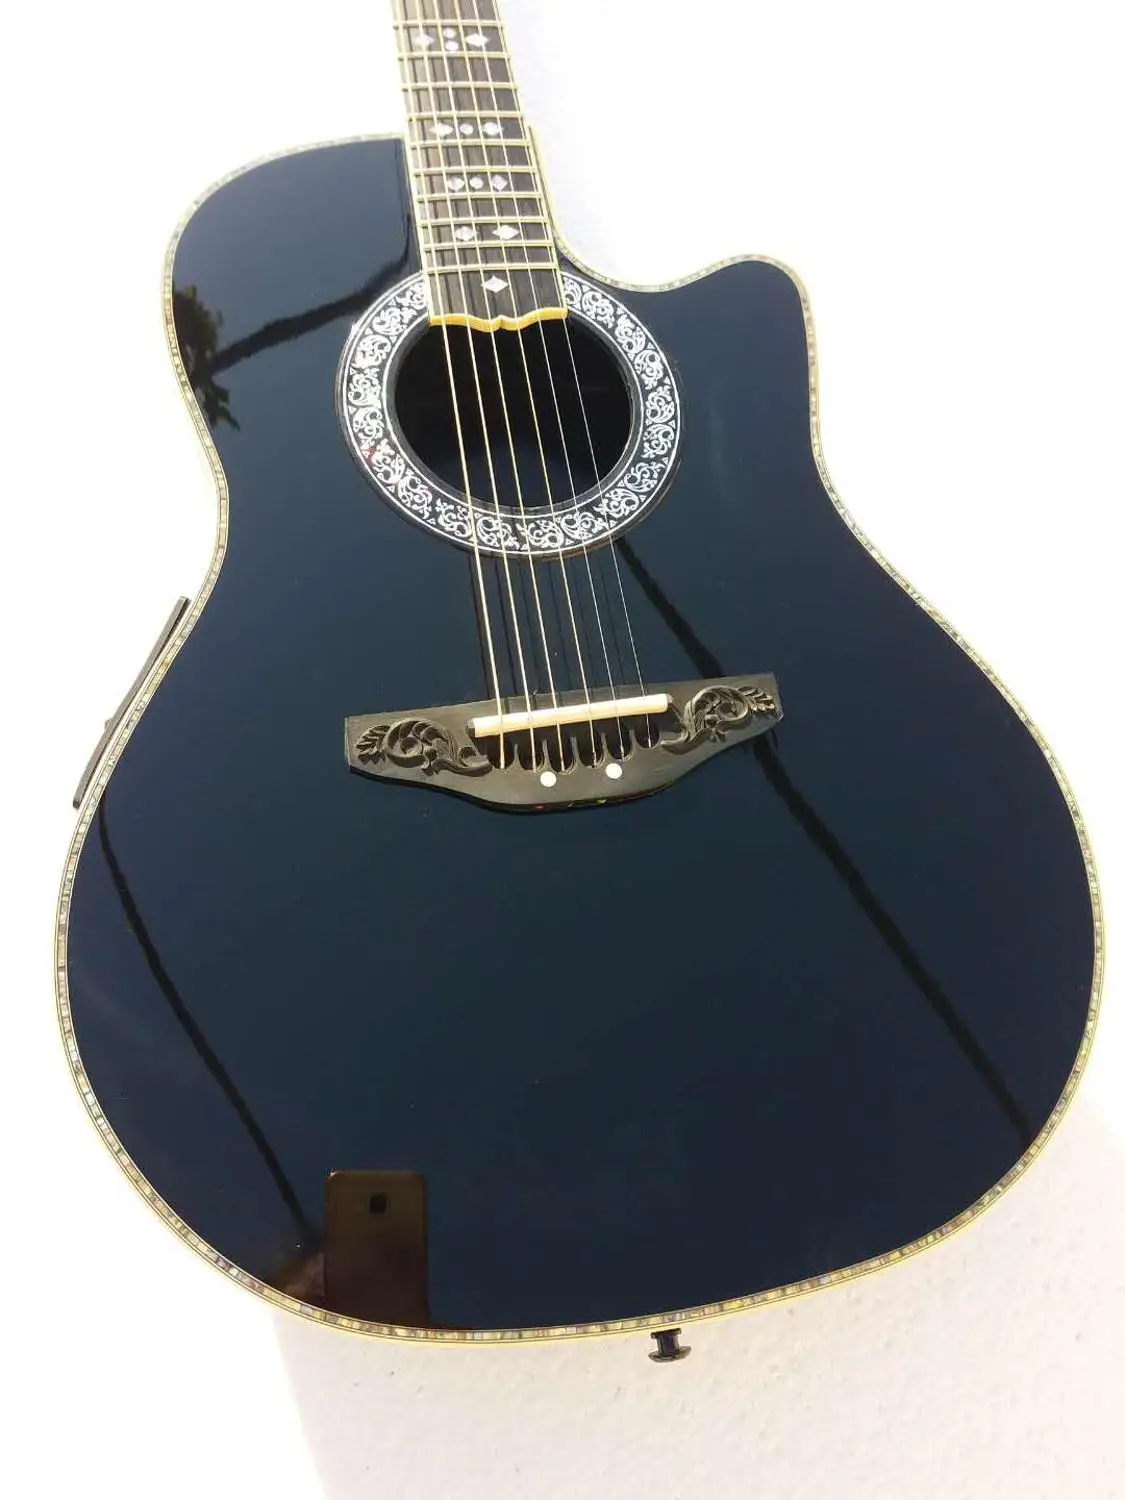 Solidwood 6 Струны для акустической гитары инкрустация ovation 6 струнная акустическая электрогитара из углеродного волокна черепаха оболочки Назад